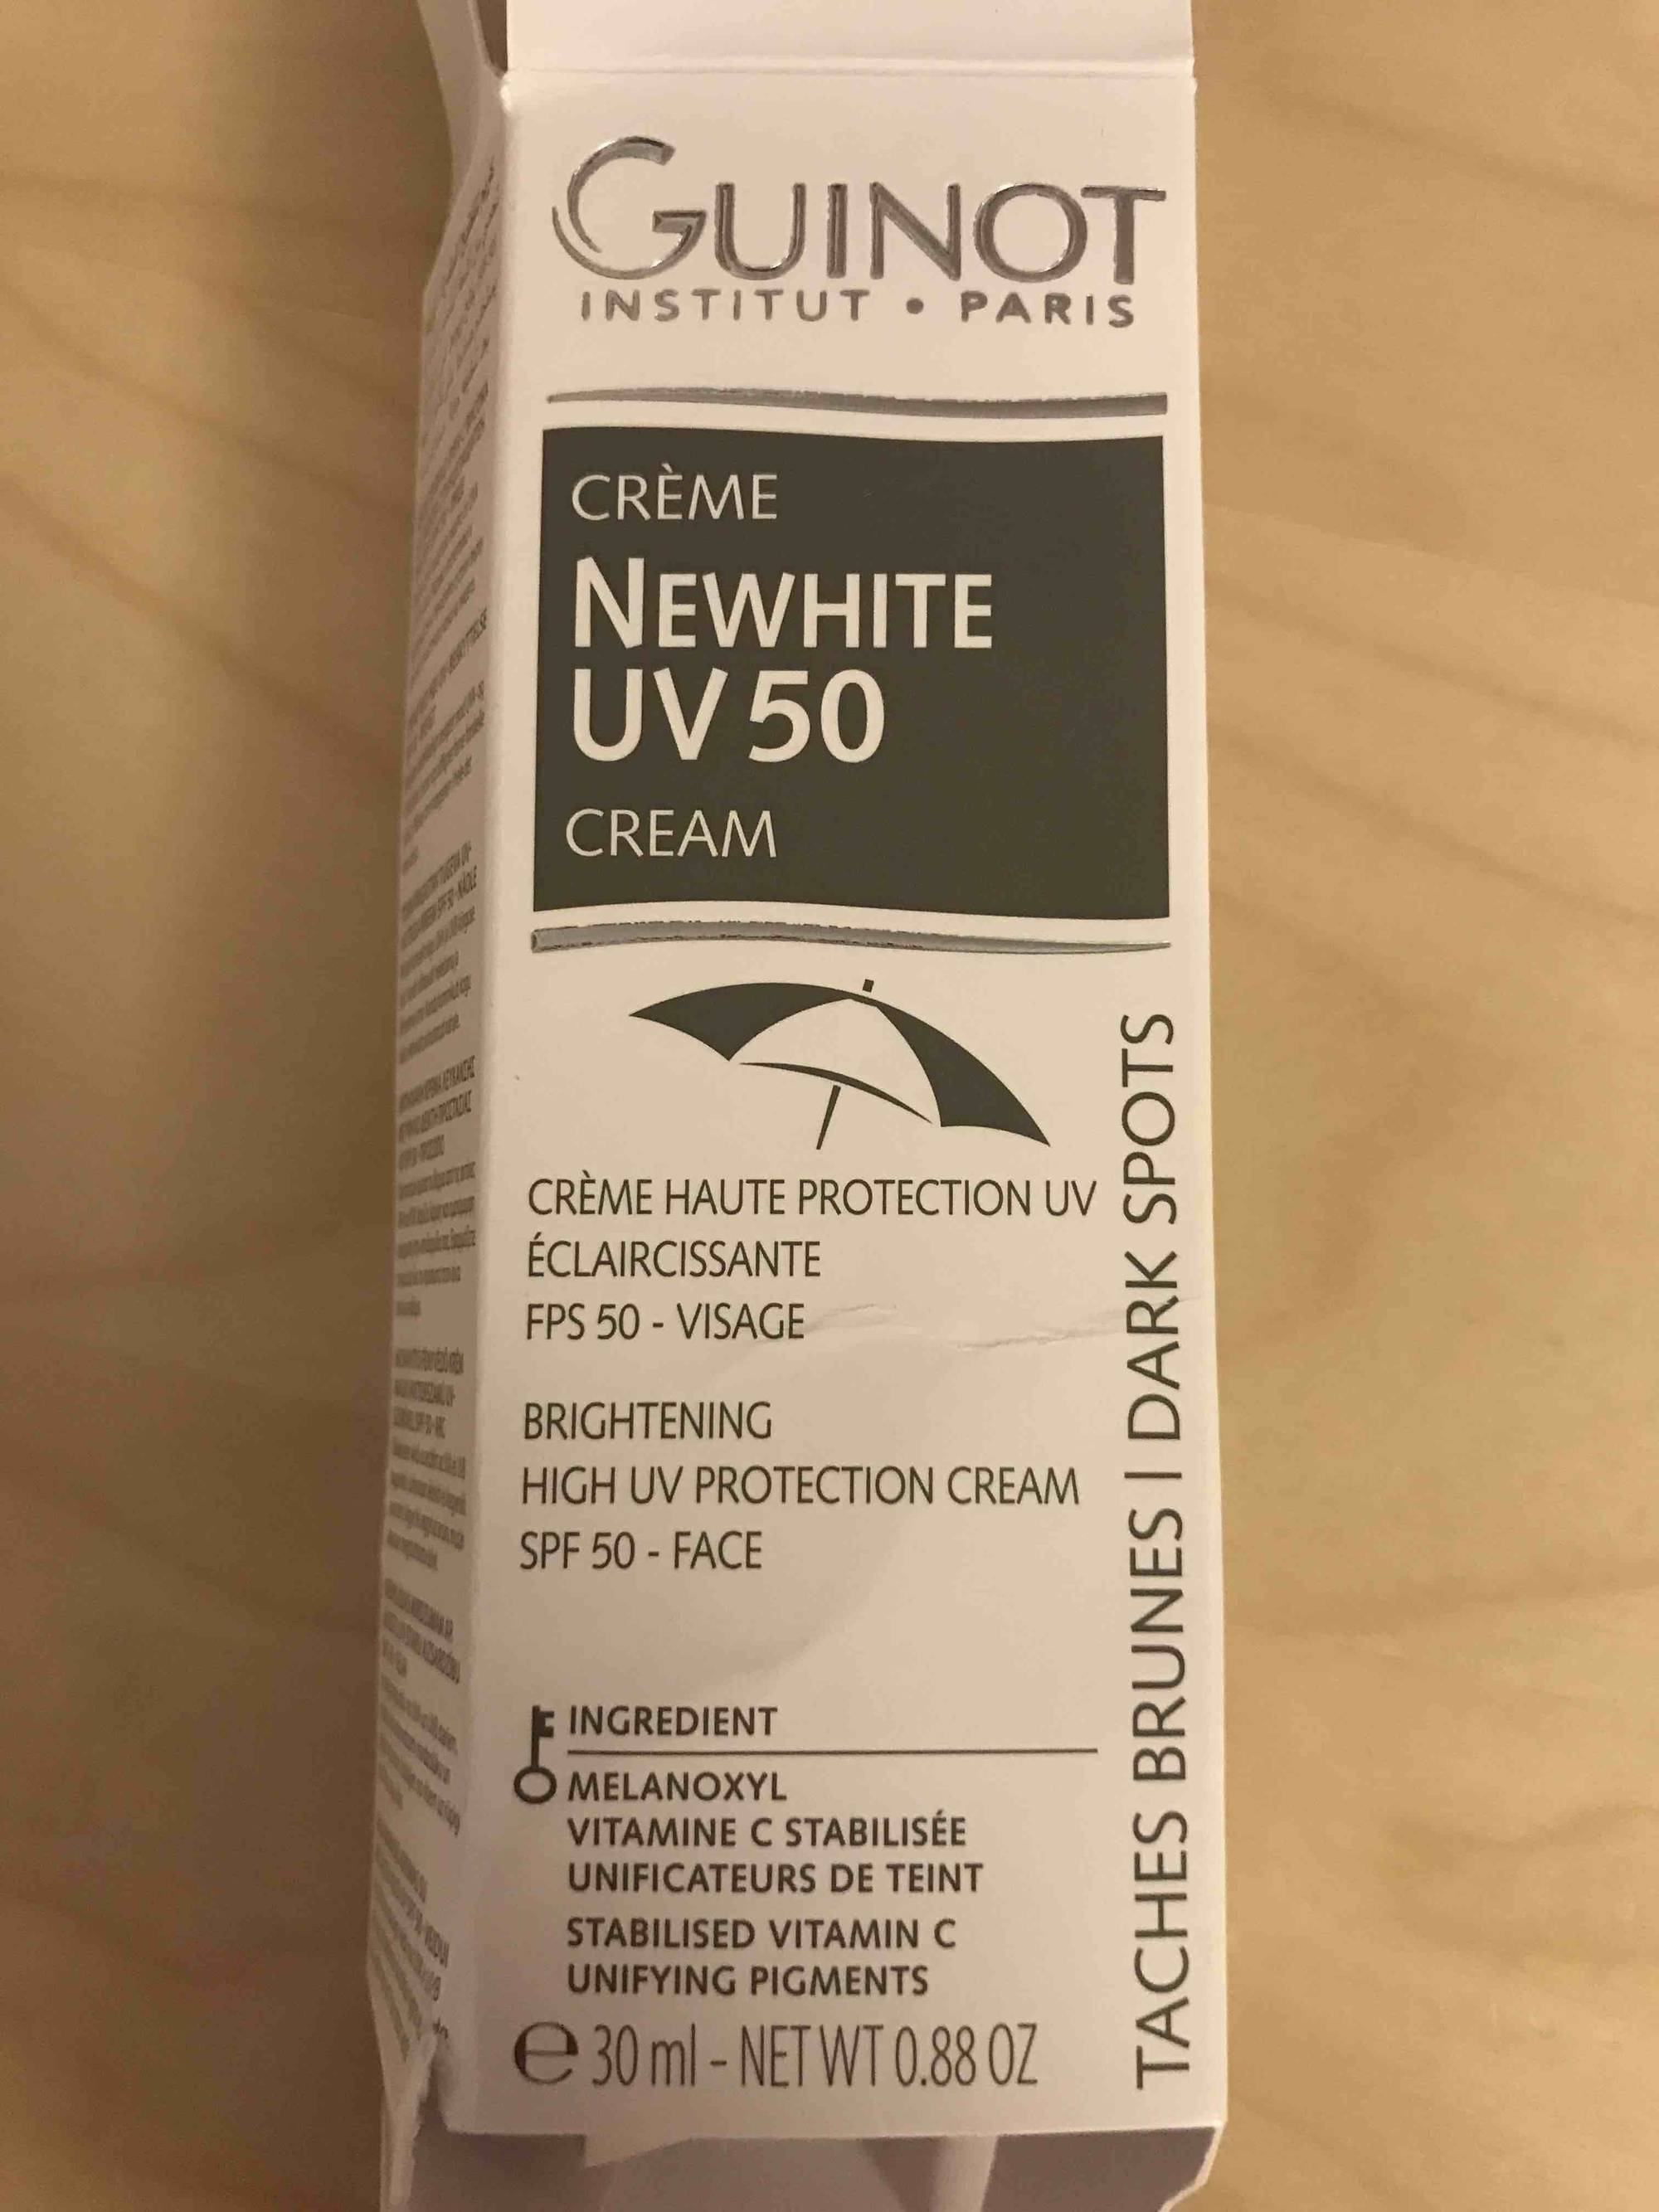 GUINOT - Crème haute protection UV éclaircissante FPS 50